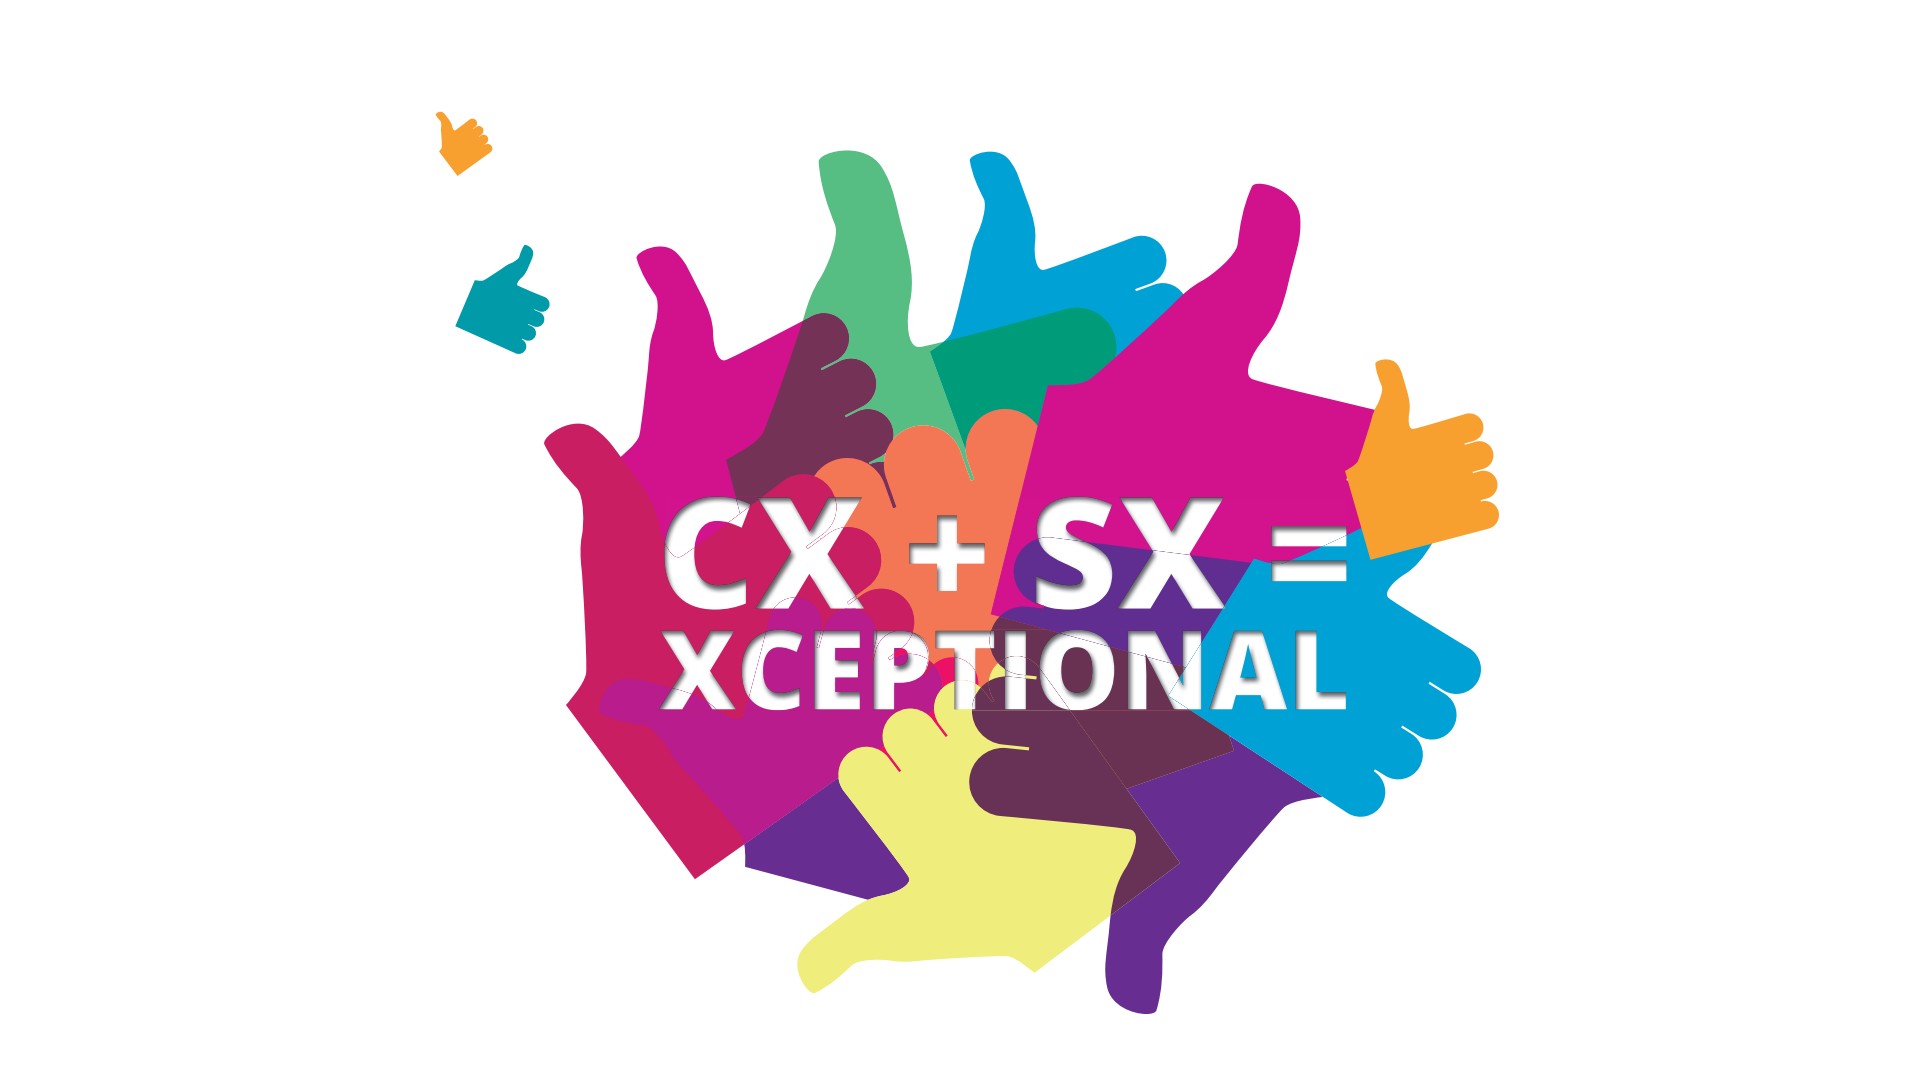 CX + SX = Xceptional